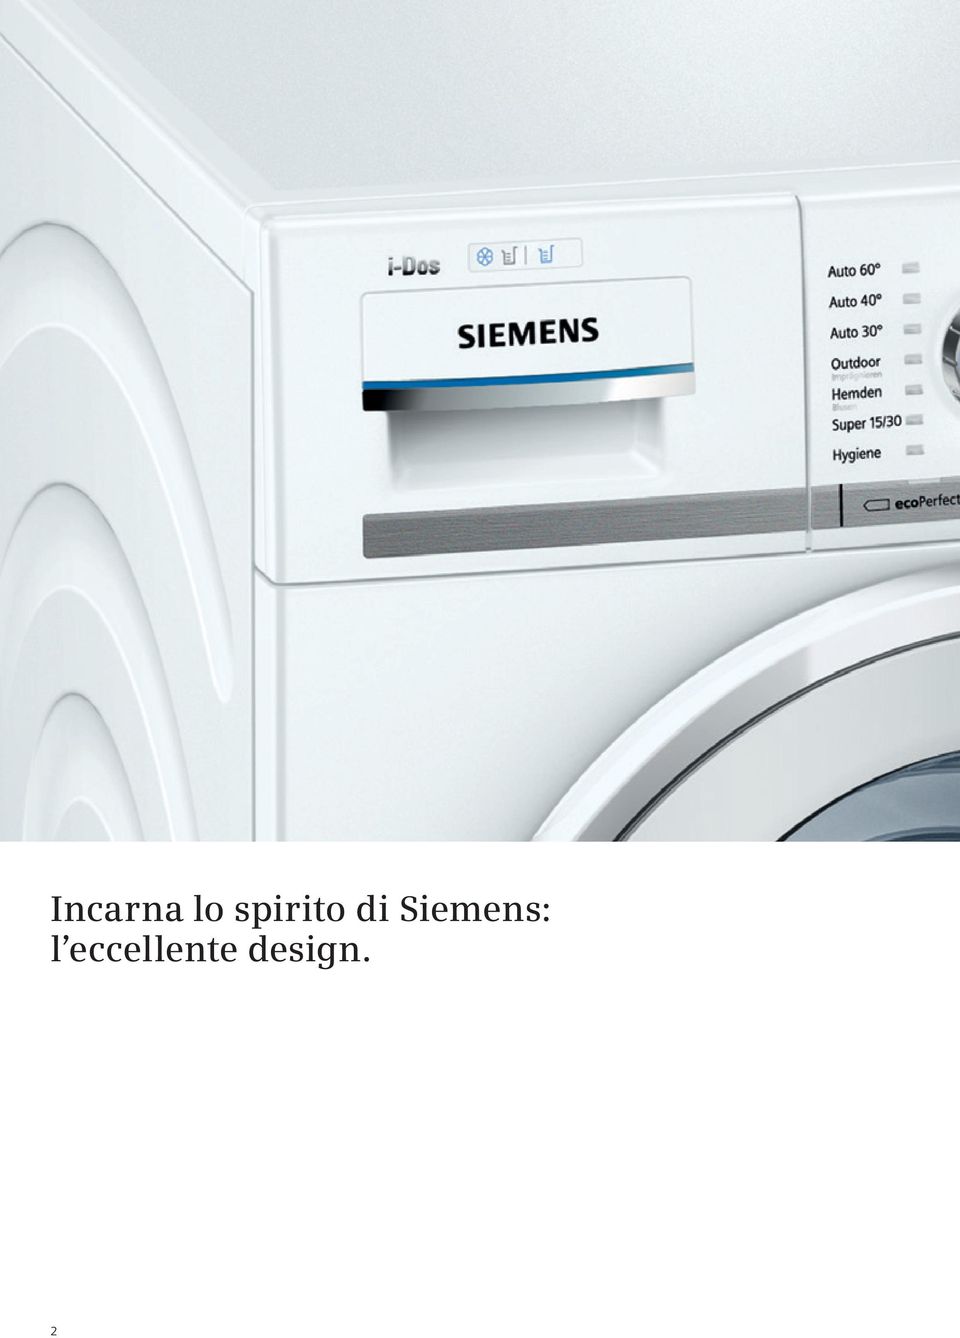 Siemens: l